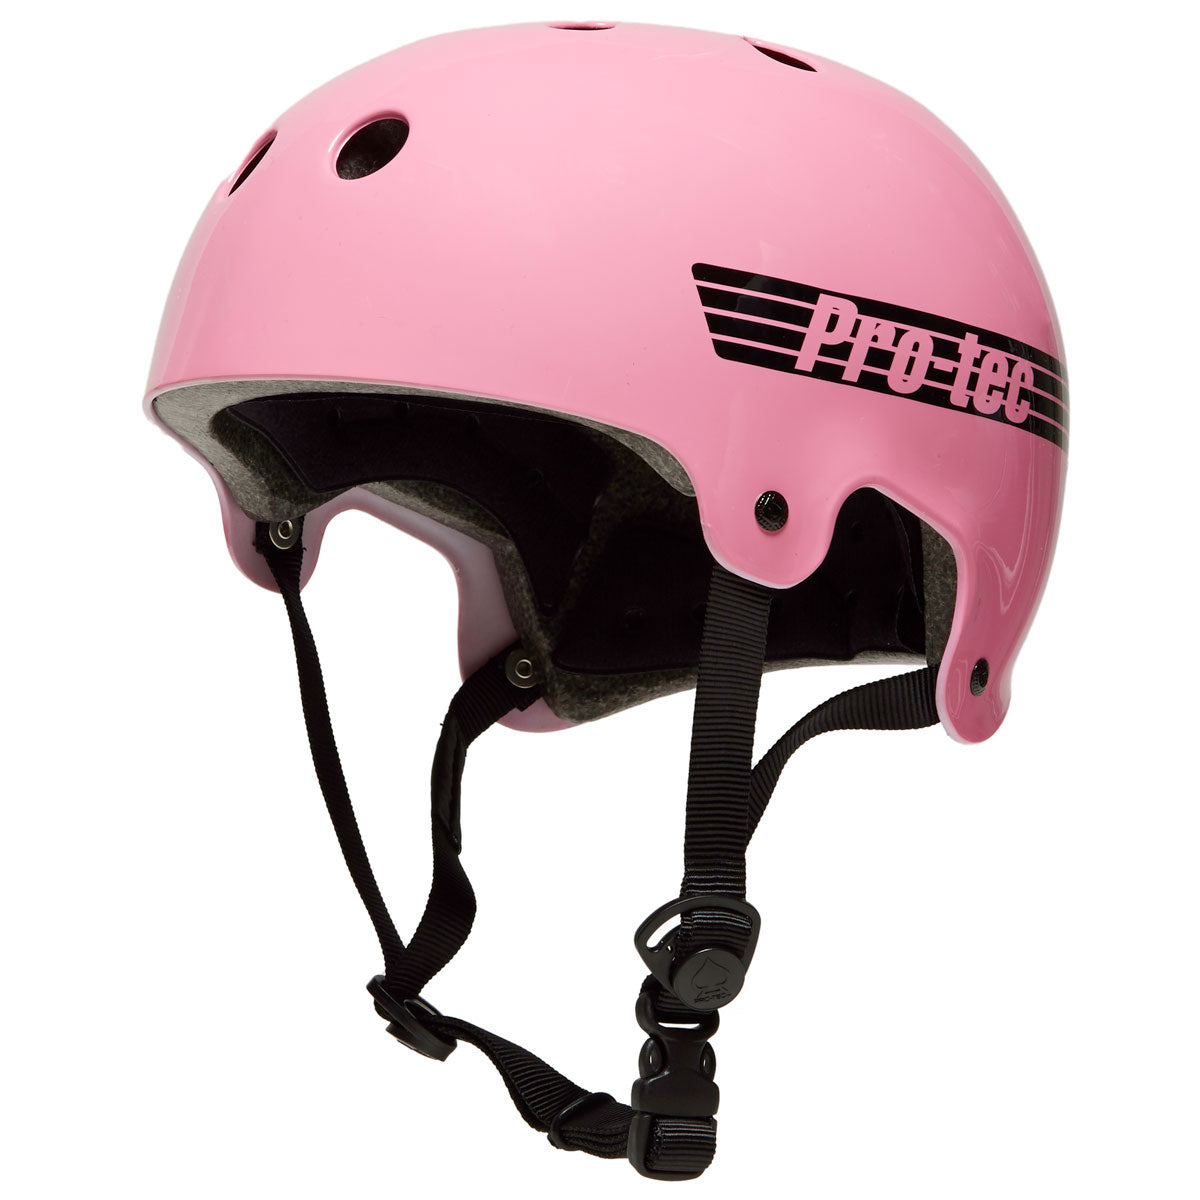 Pro-Tec Old School Certified Helmet - Gloss Pink image 1